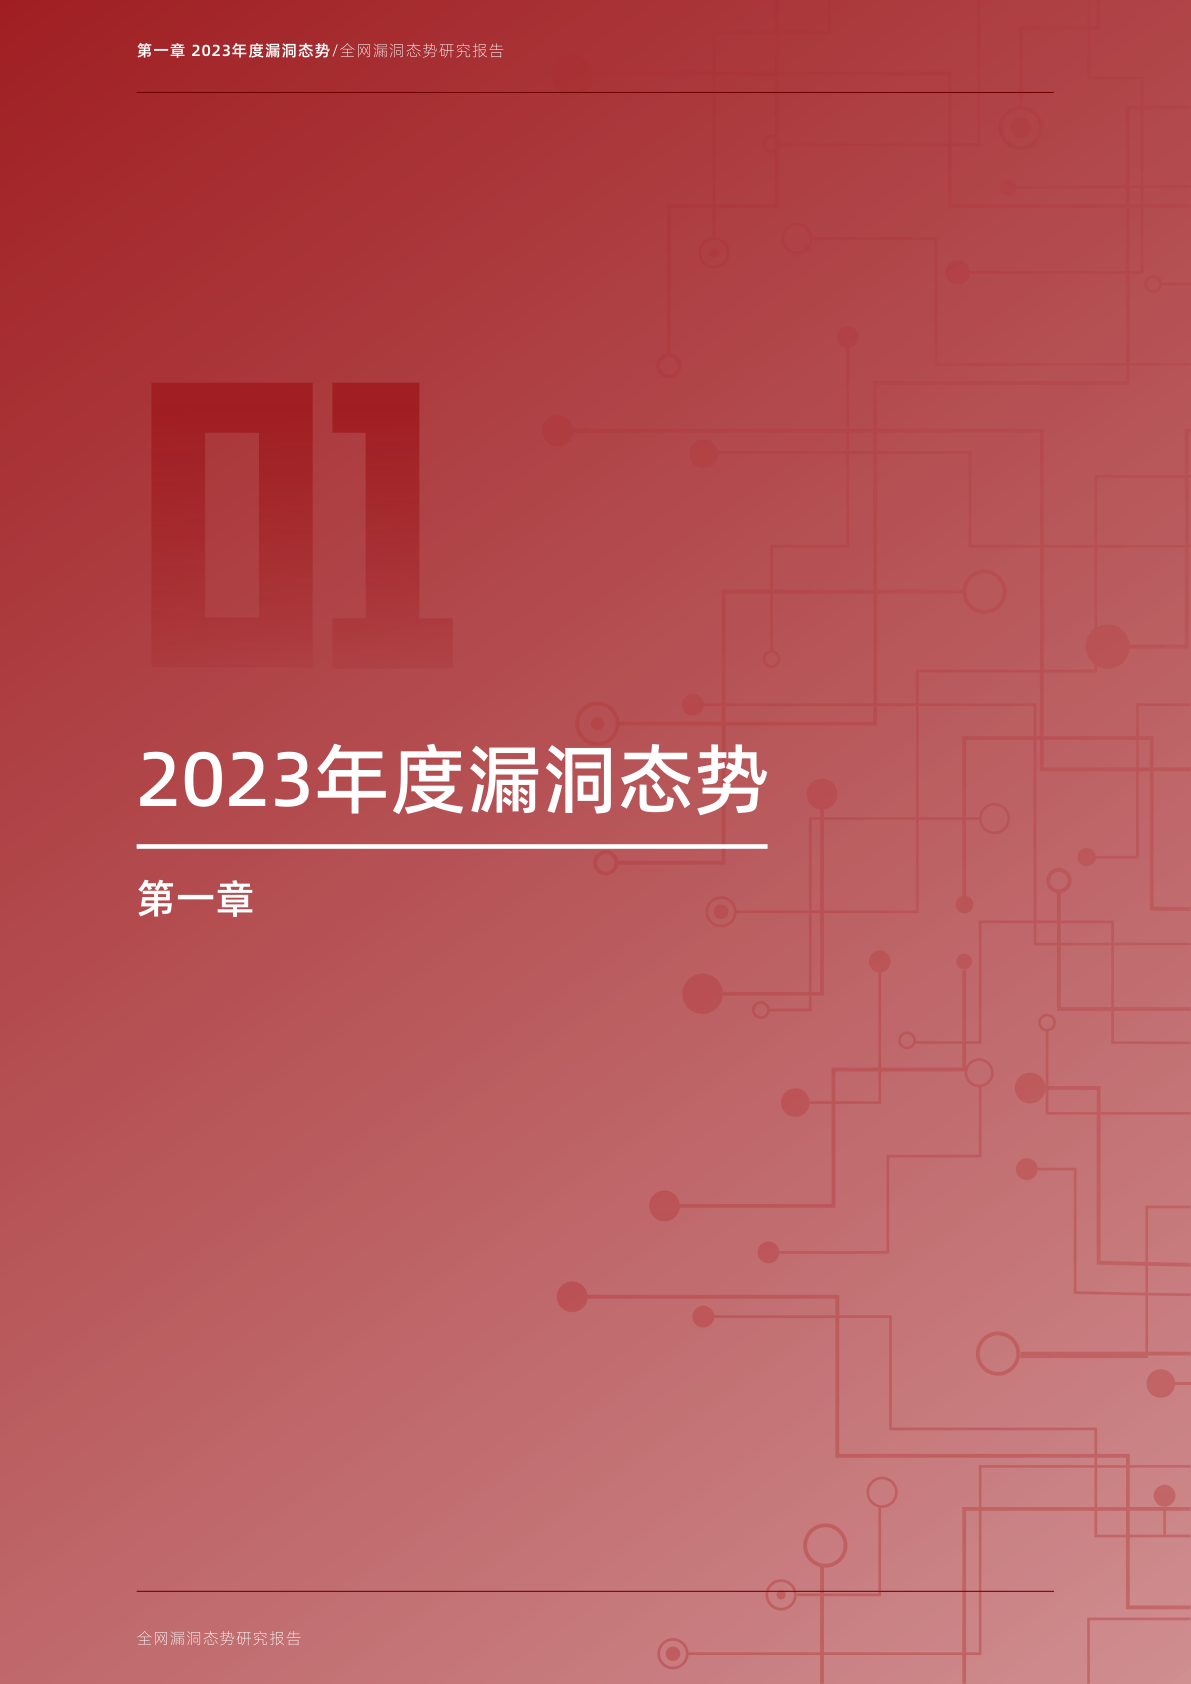 2023年度全网漏洞态势研究报告(附下载)